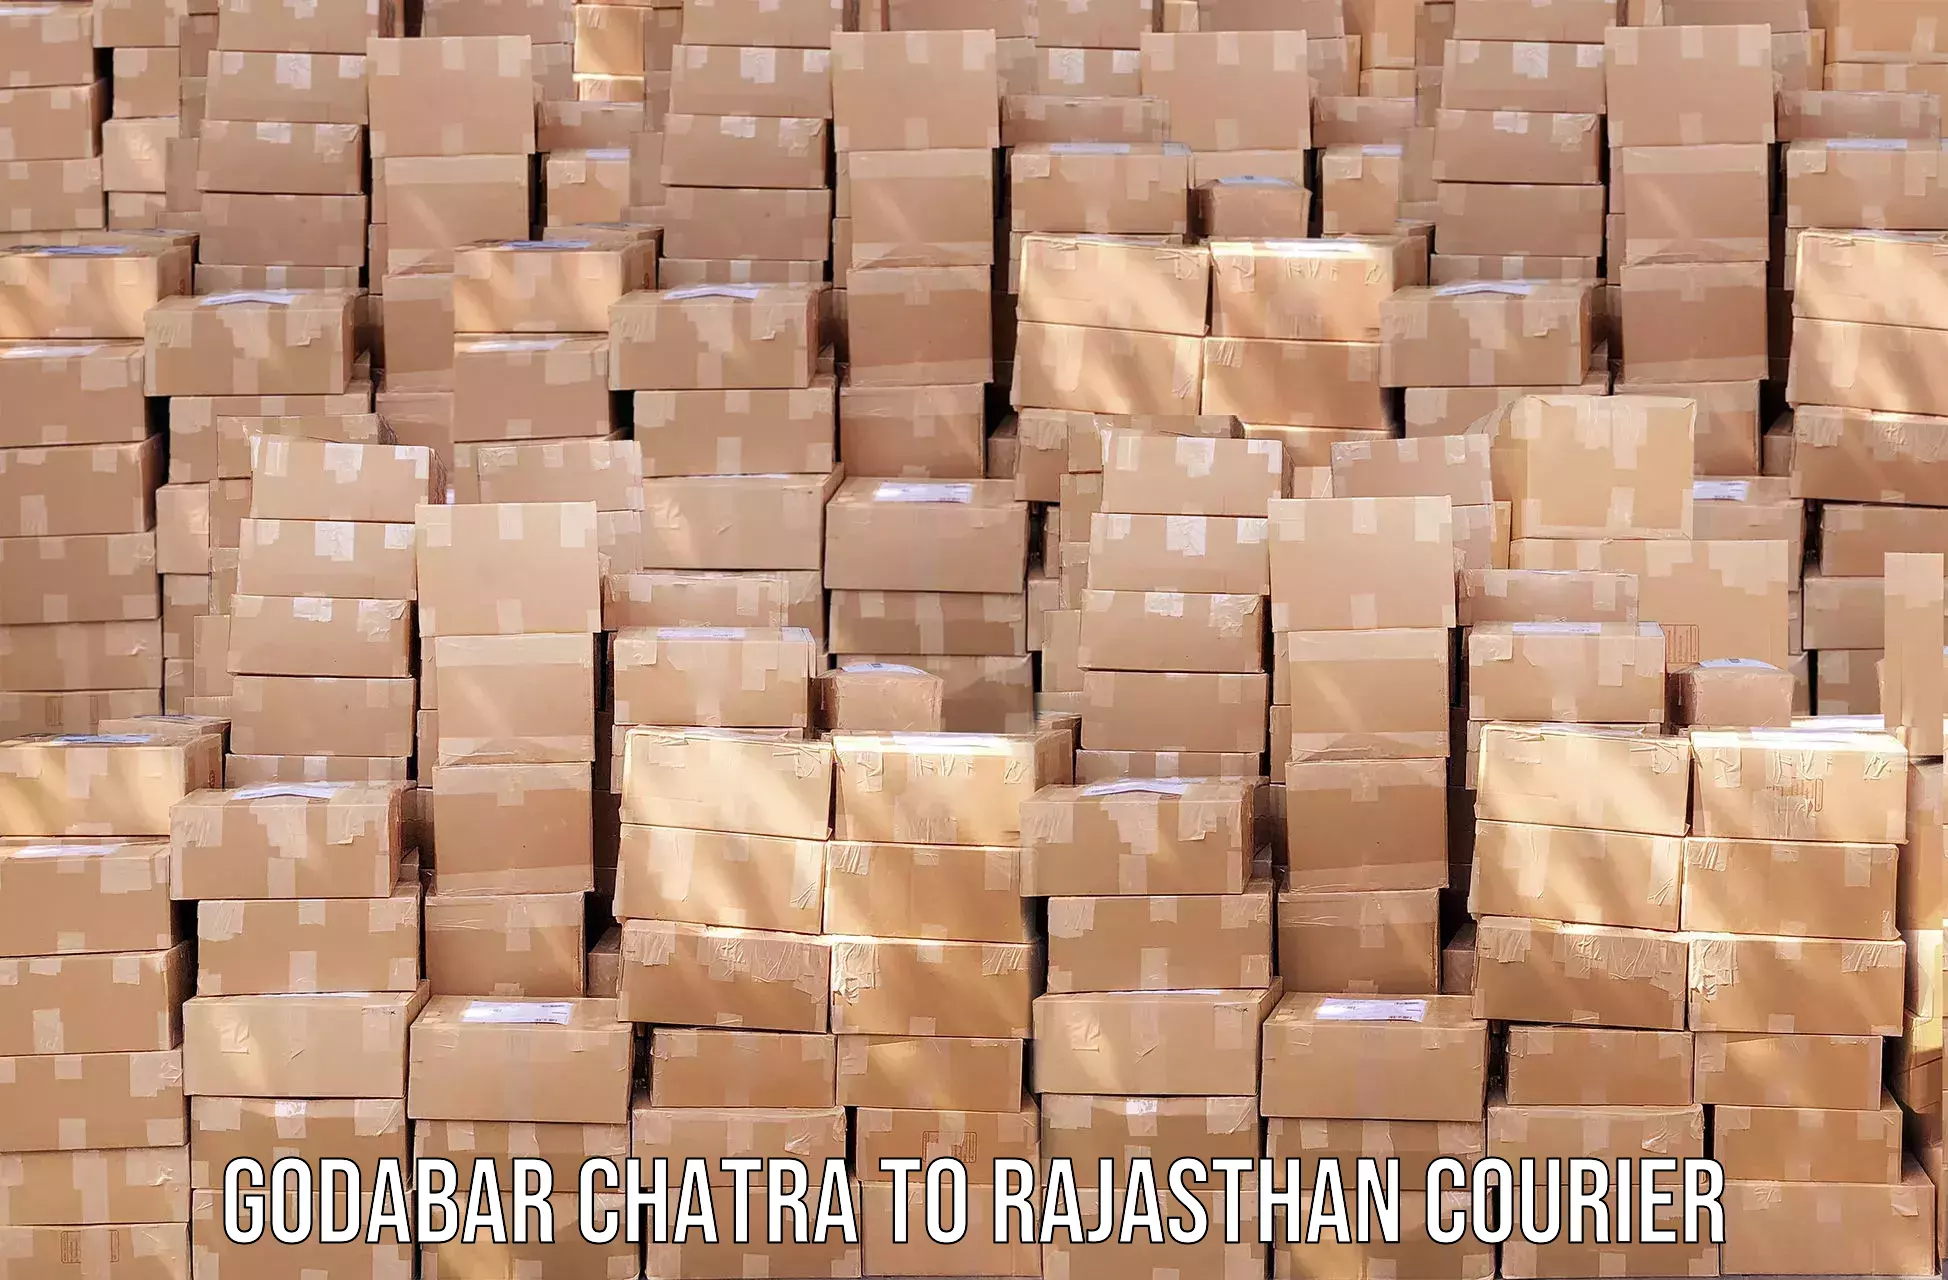 Doorstep delivery service Godabar Chatra to Kawai